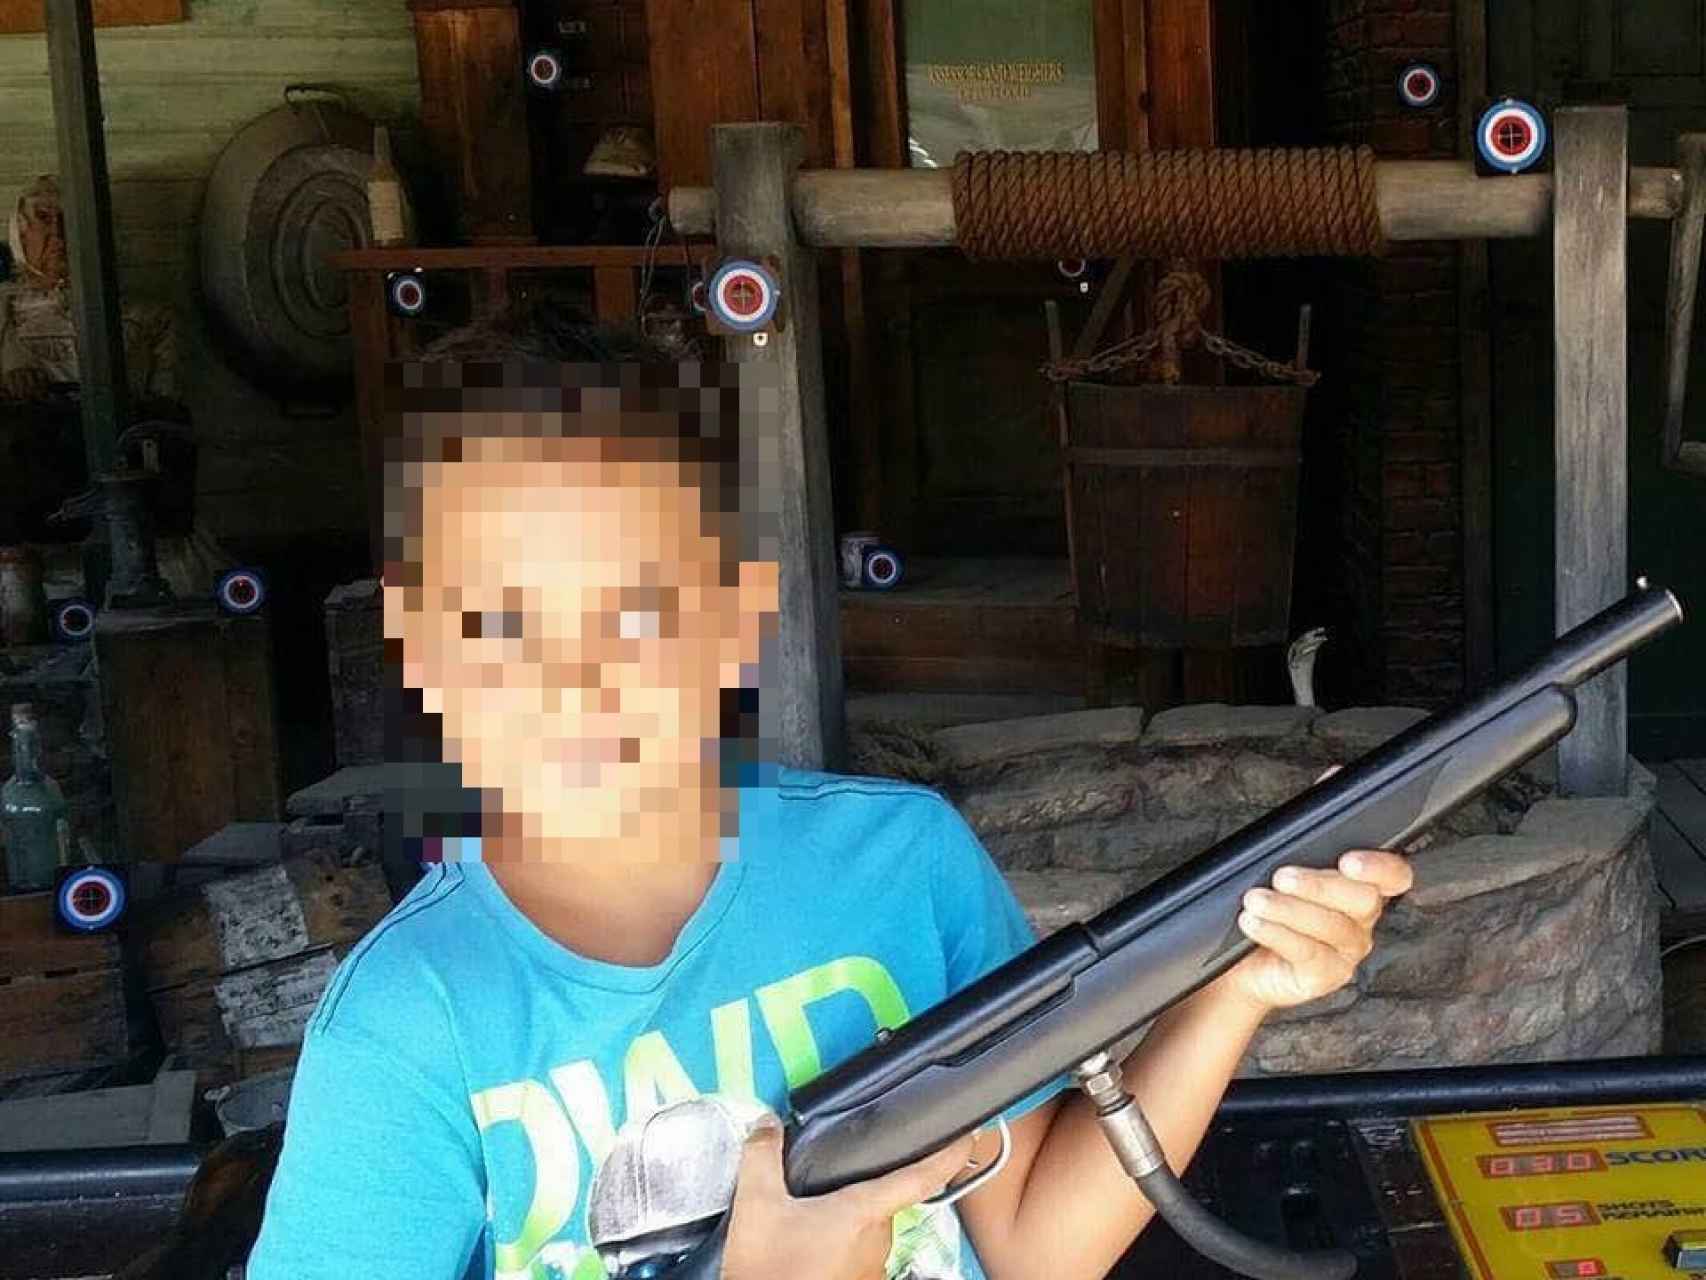 El hijo de la pareja, de 11 años de edad, también ha sido asesinado, presuntamente por su padre